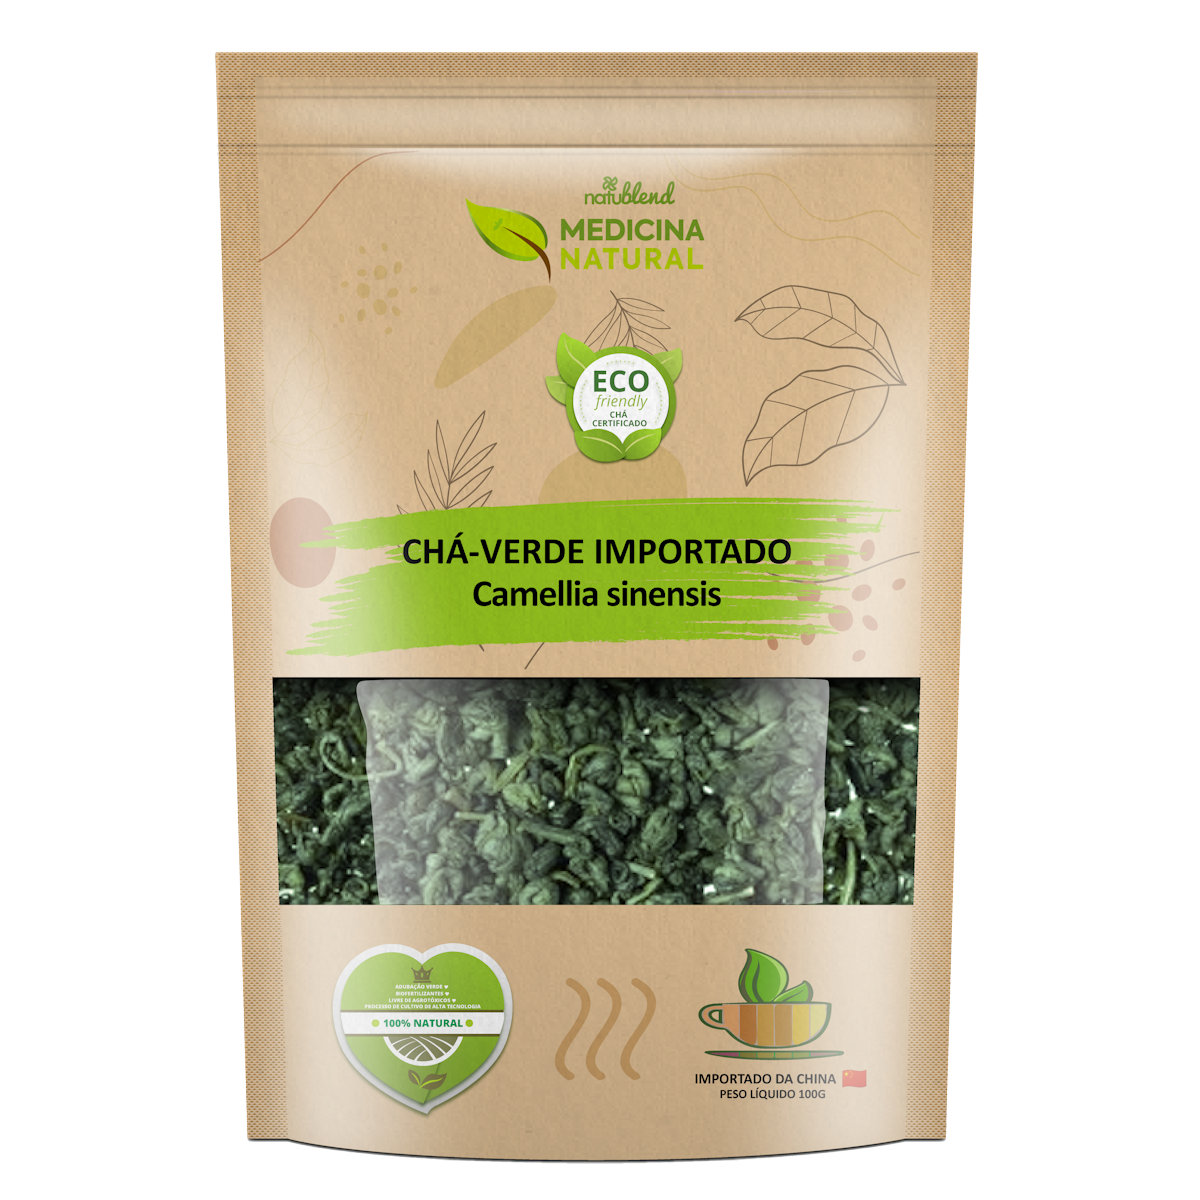 Chá Verde Importado - Camellia sinensis - Medicina Natural